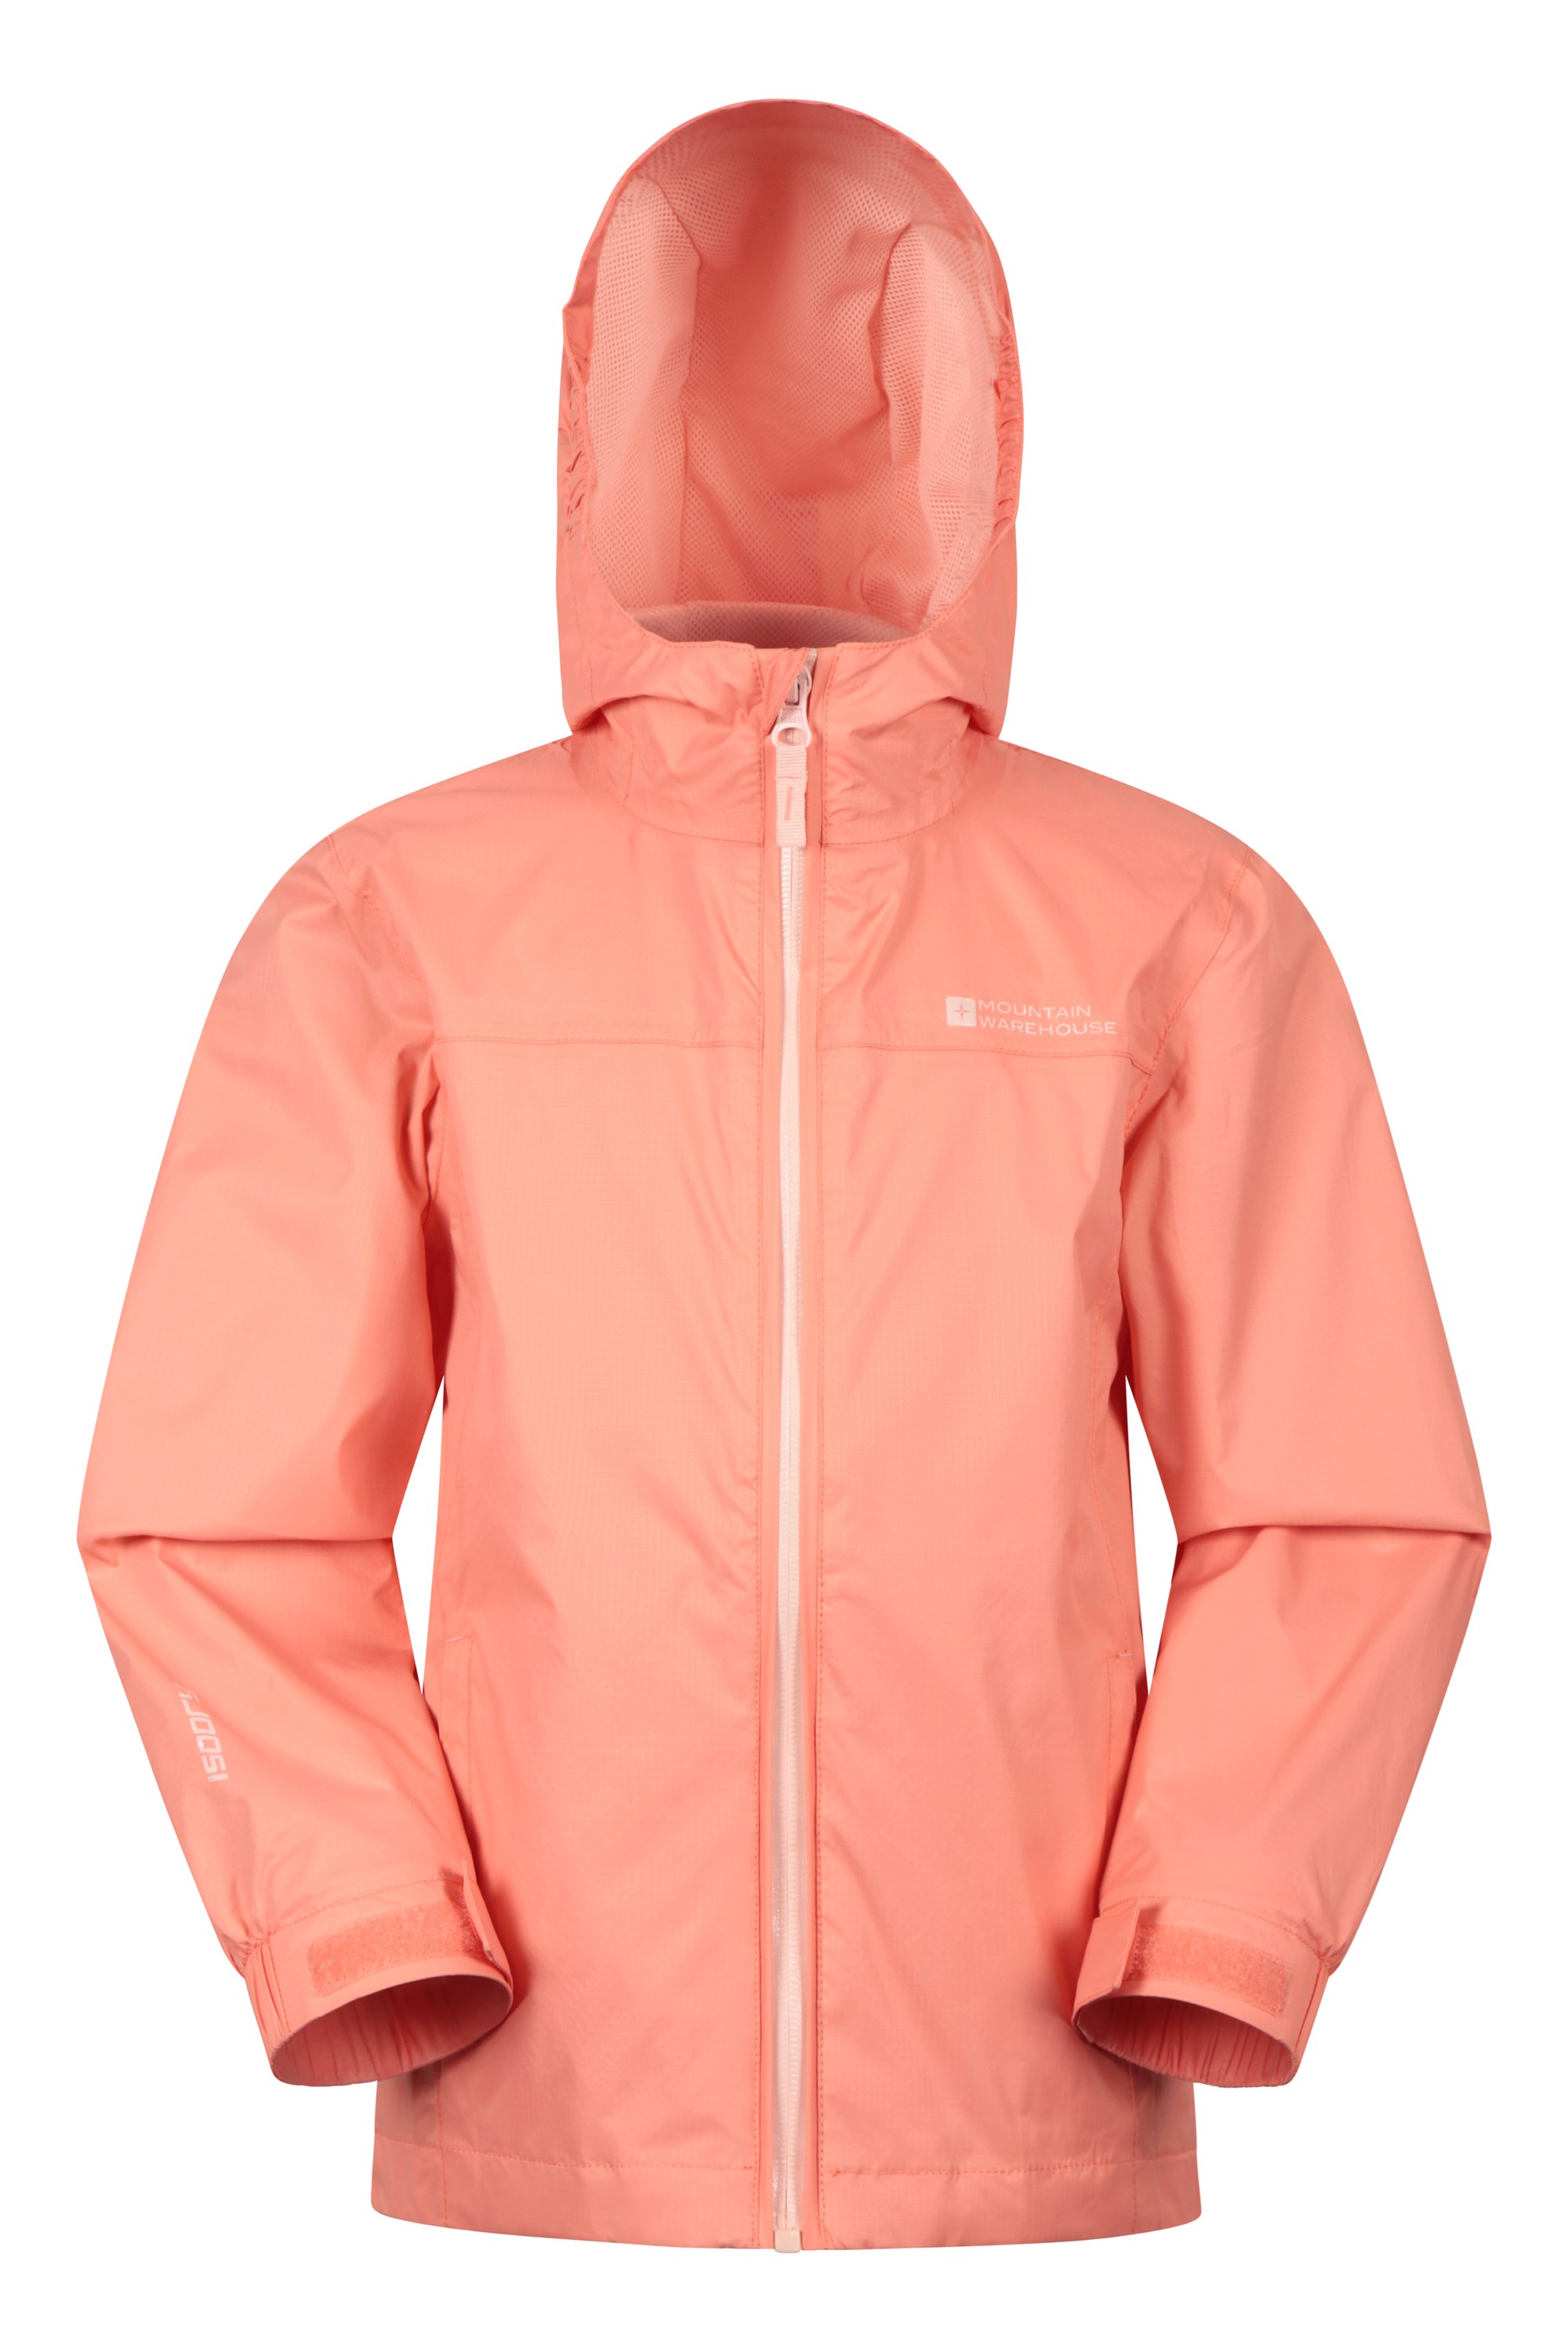 Mountain Warehouse Torrent Jacke für Herren Leichter Mantel mit versiegelten Nähten Wasserfeste Regenjacke Freizeitjacke 